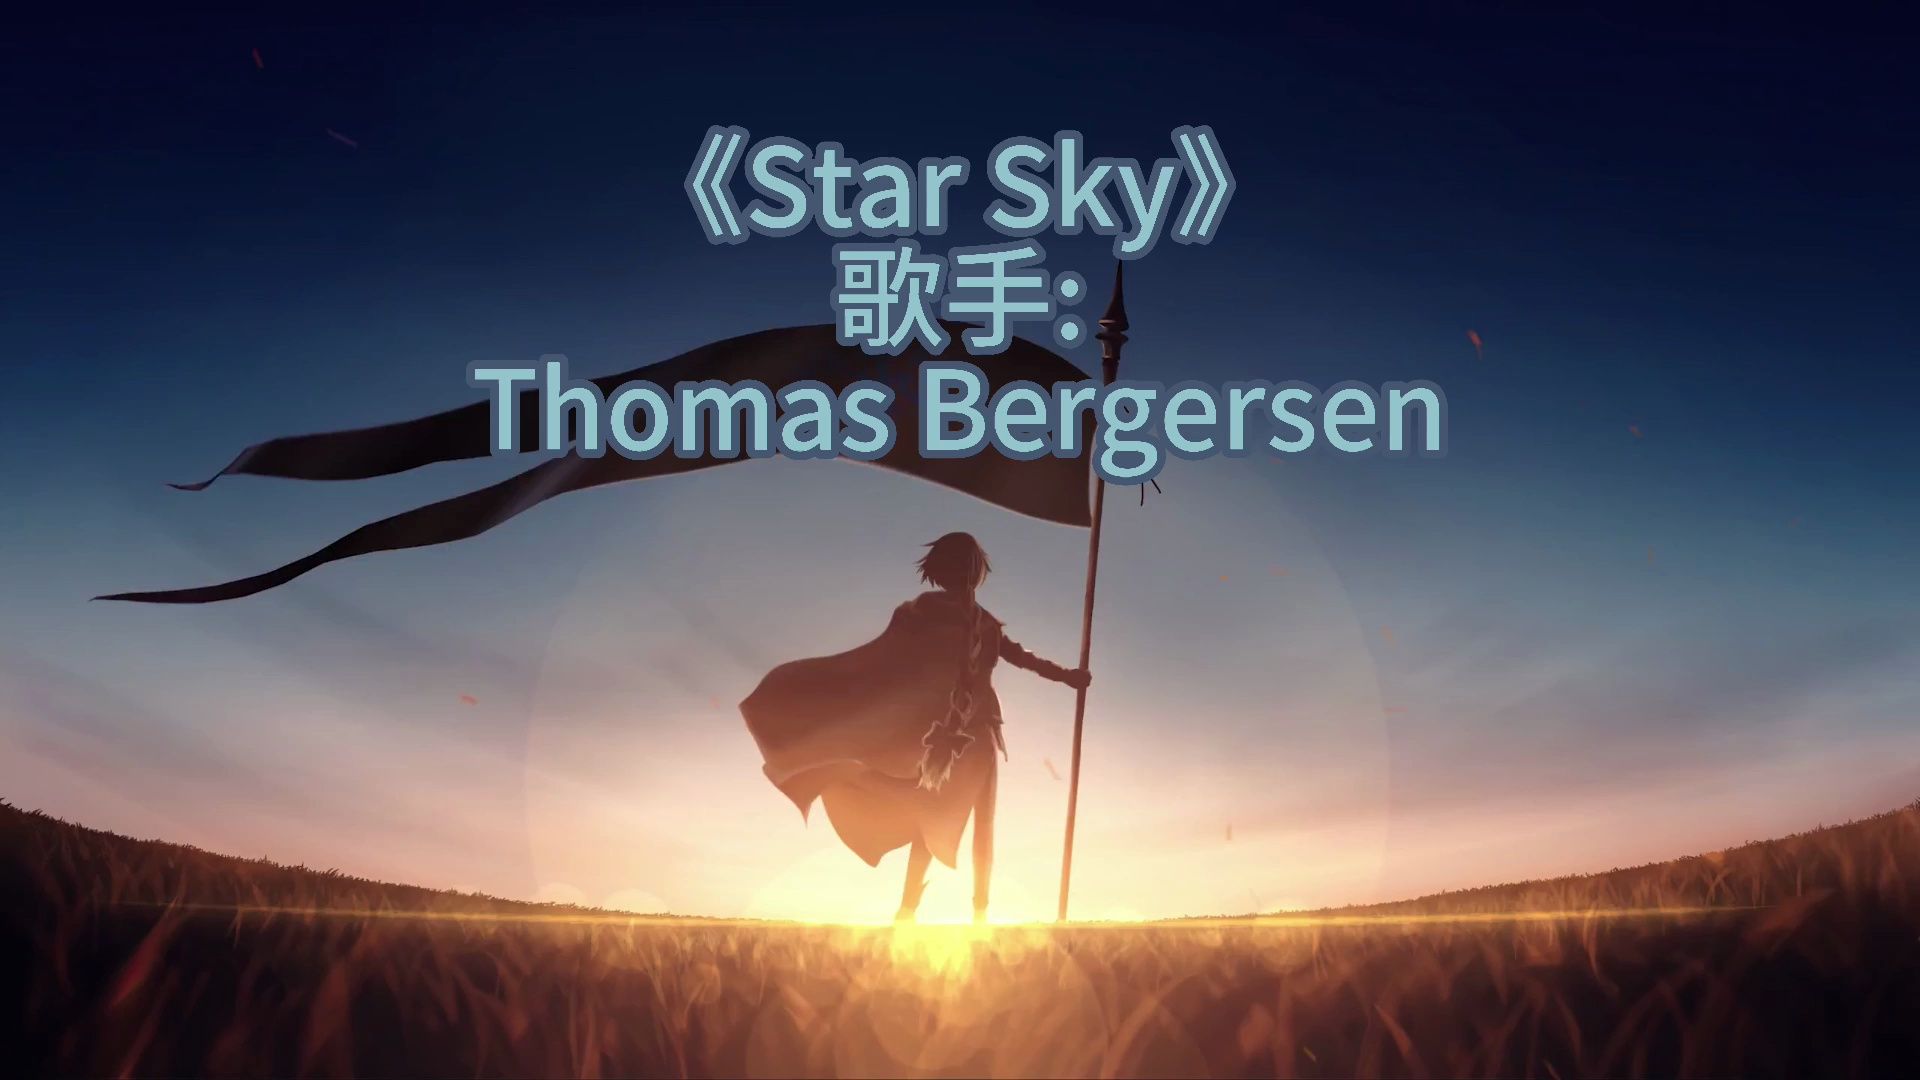 [图]《 Star Sky》 歌手: Thomas Bergersen   中文字幕翻译 战歌已经响起 兄弟们燃起来